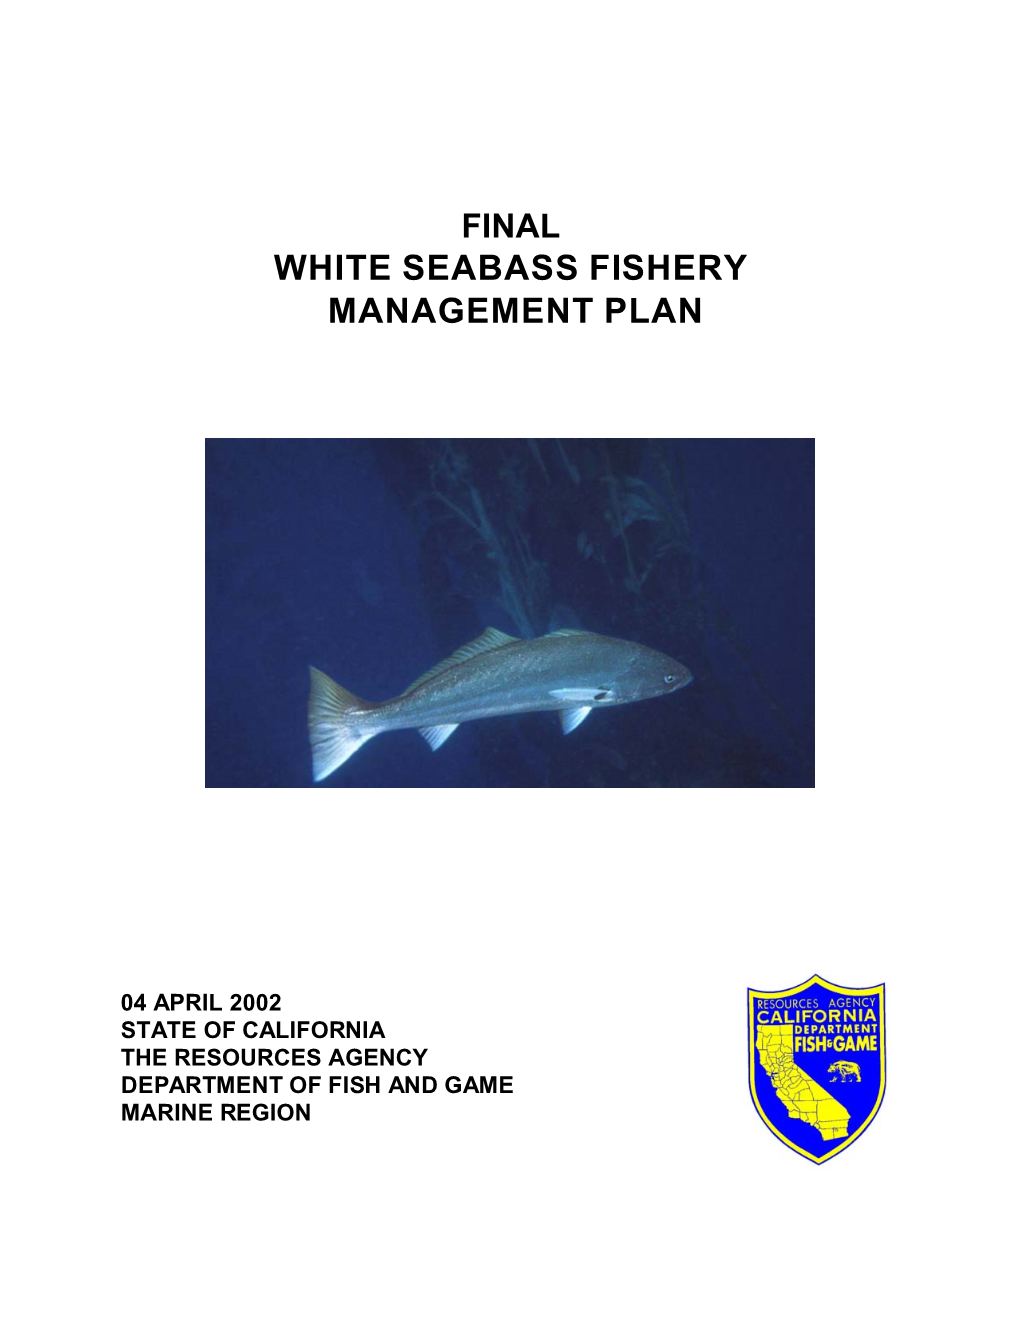 White Seabass Fishery Management Plan